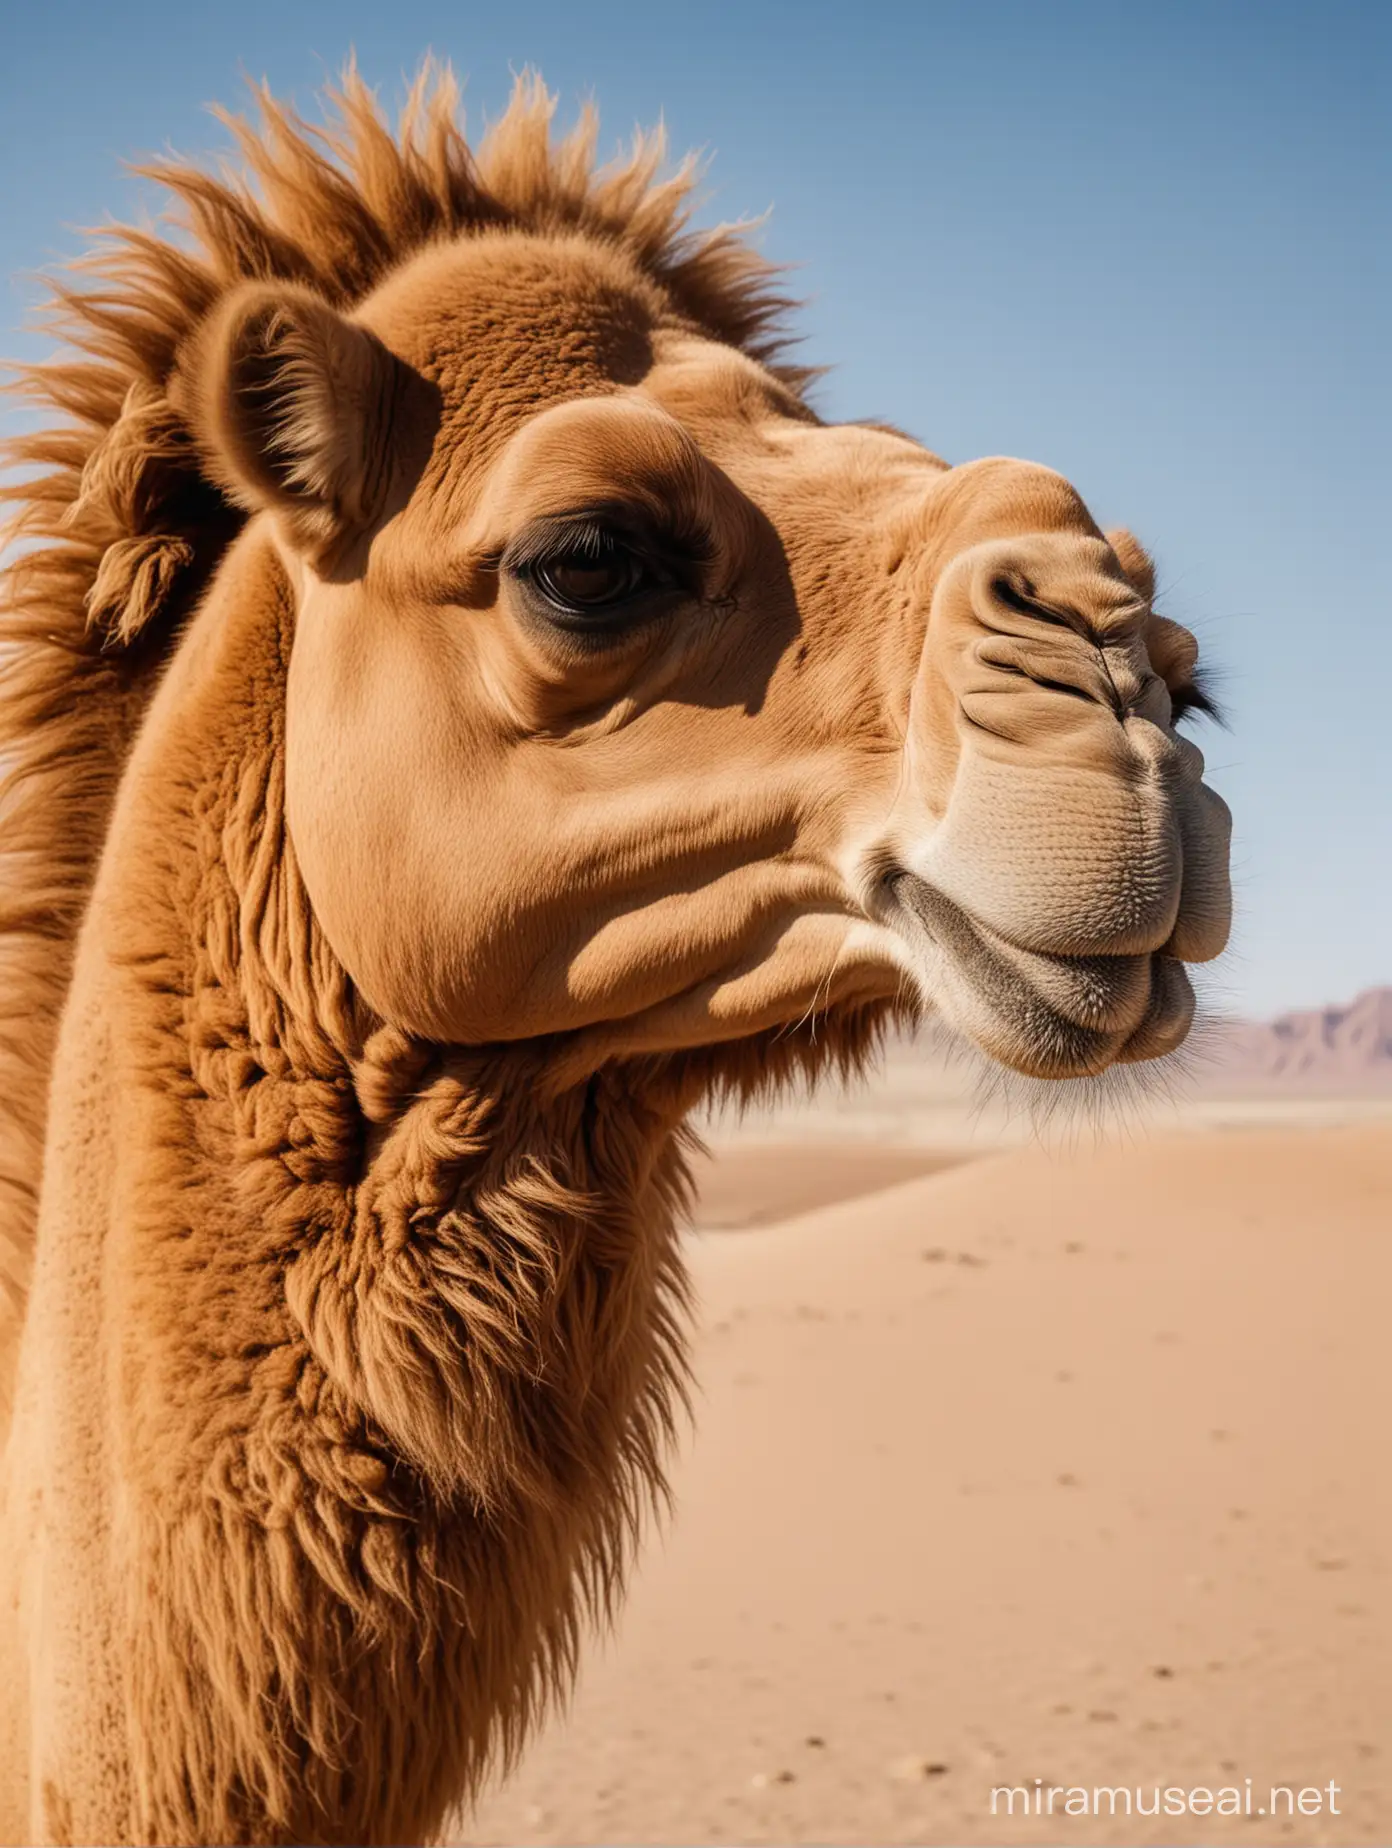 Majestic Camel Portrait in the Gobi Desert